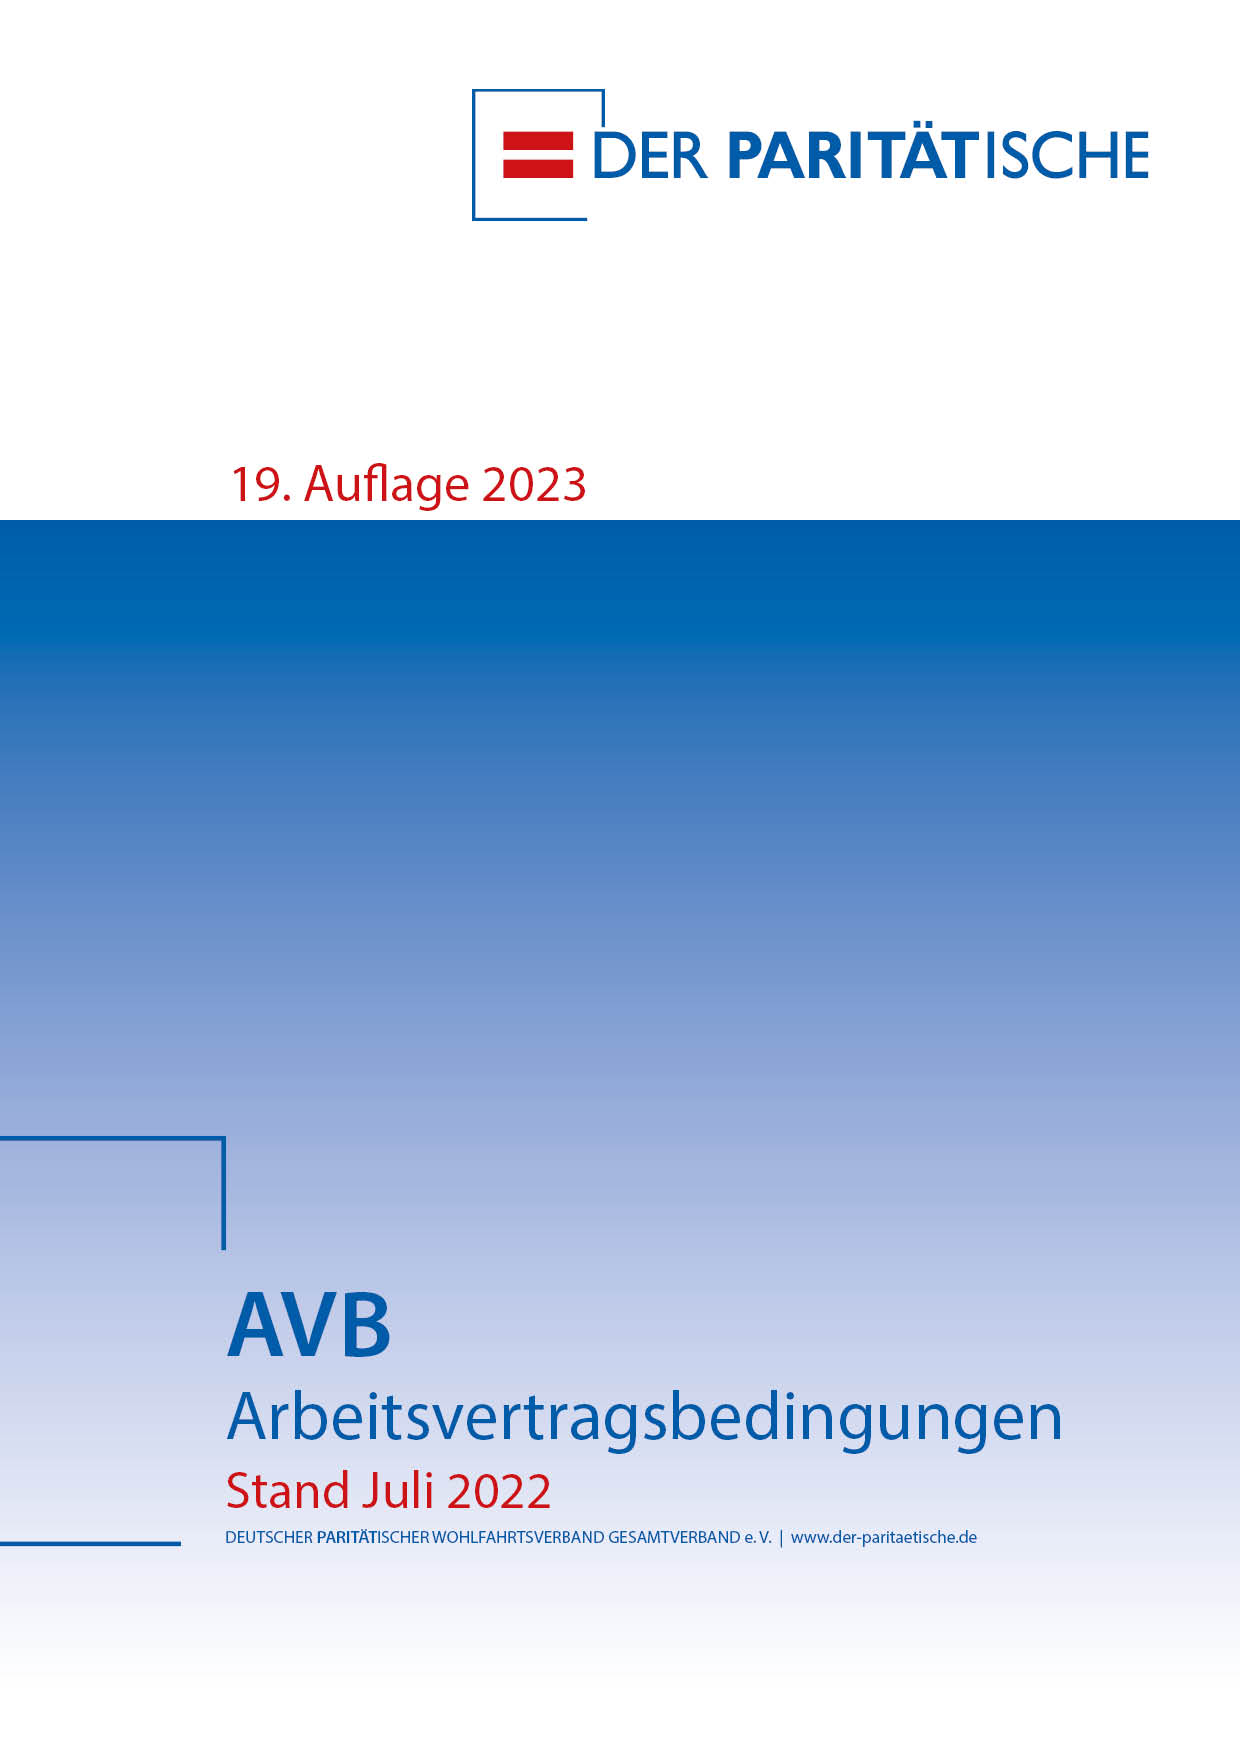 Titel der AVB, Auflage 19